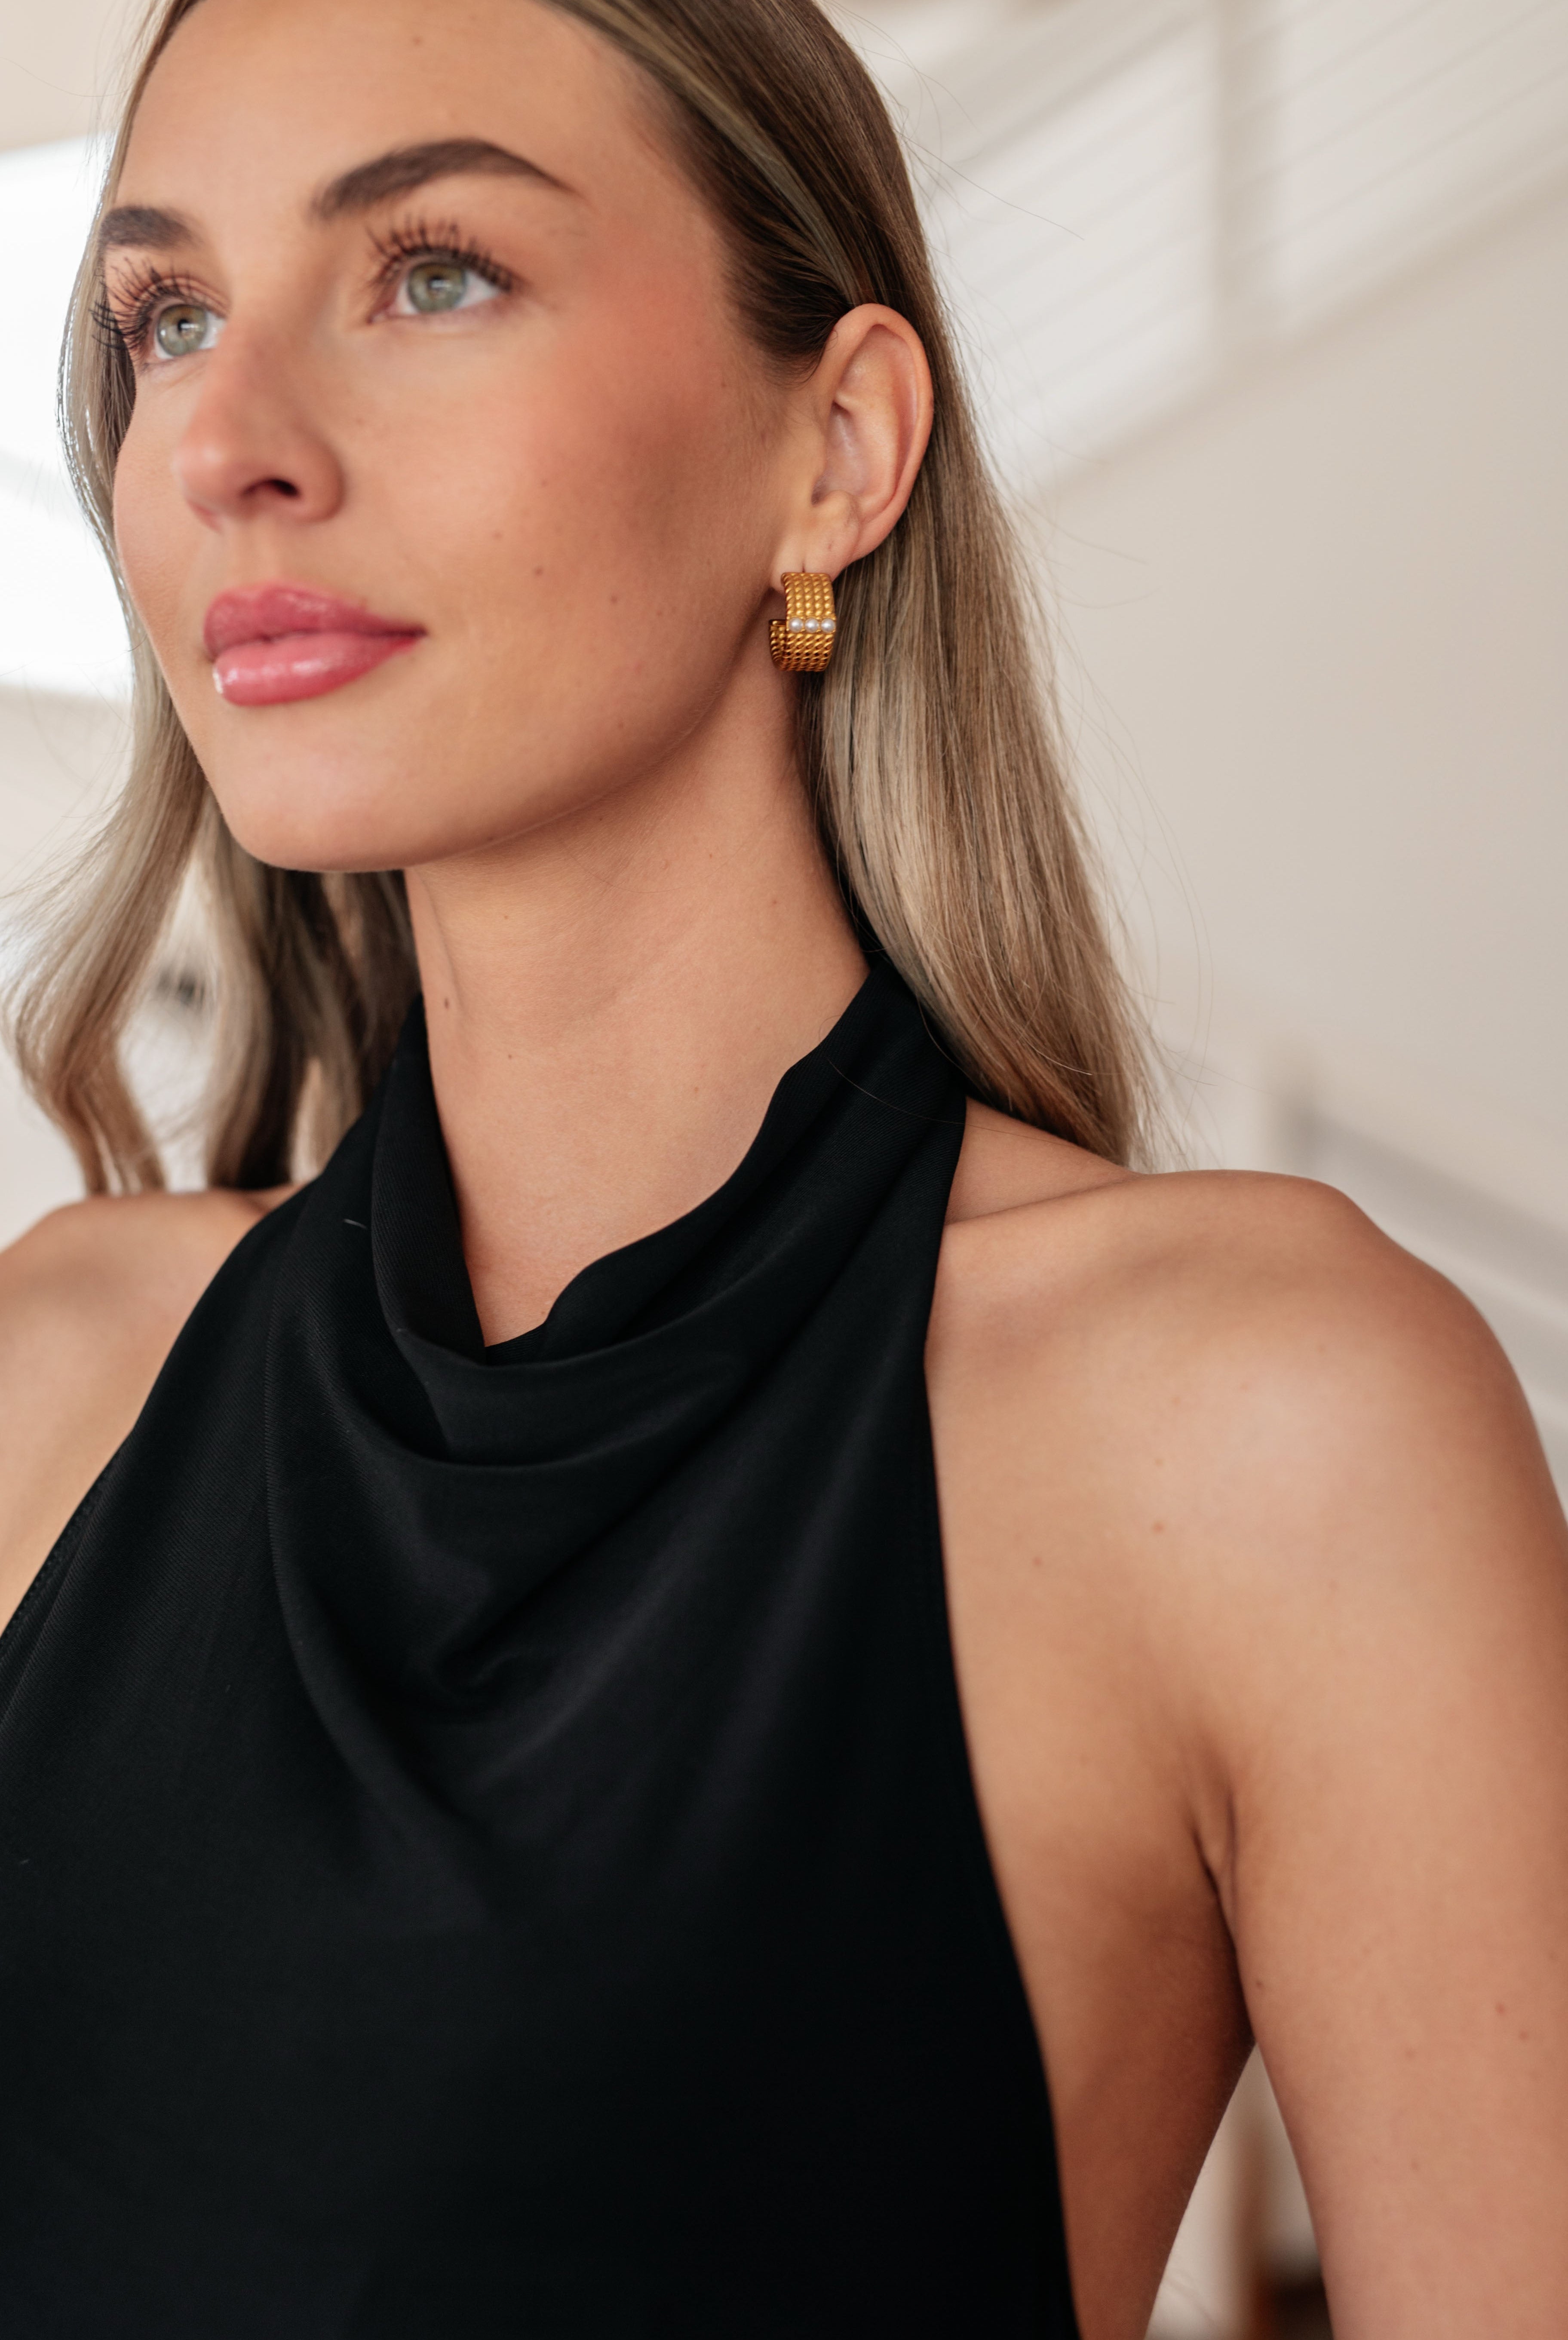 Stacked Gold Hoop Earrings-Earrings-Krush Kandy, Women's Online Fashion Boutique Located in Phoenix, Arizona (Scottsdale Area)